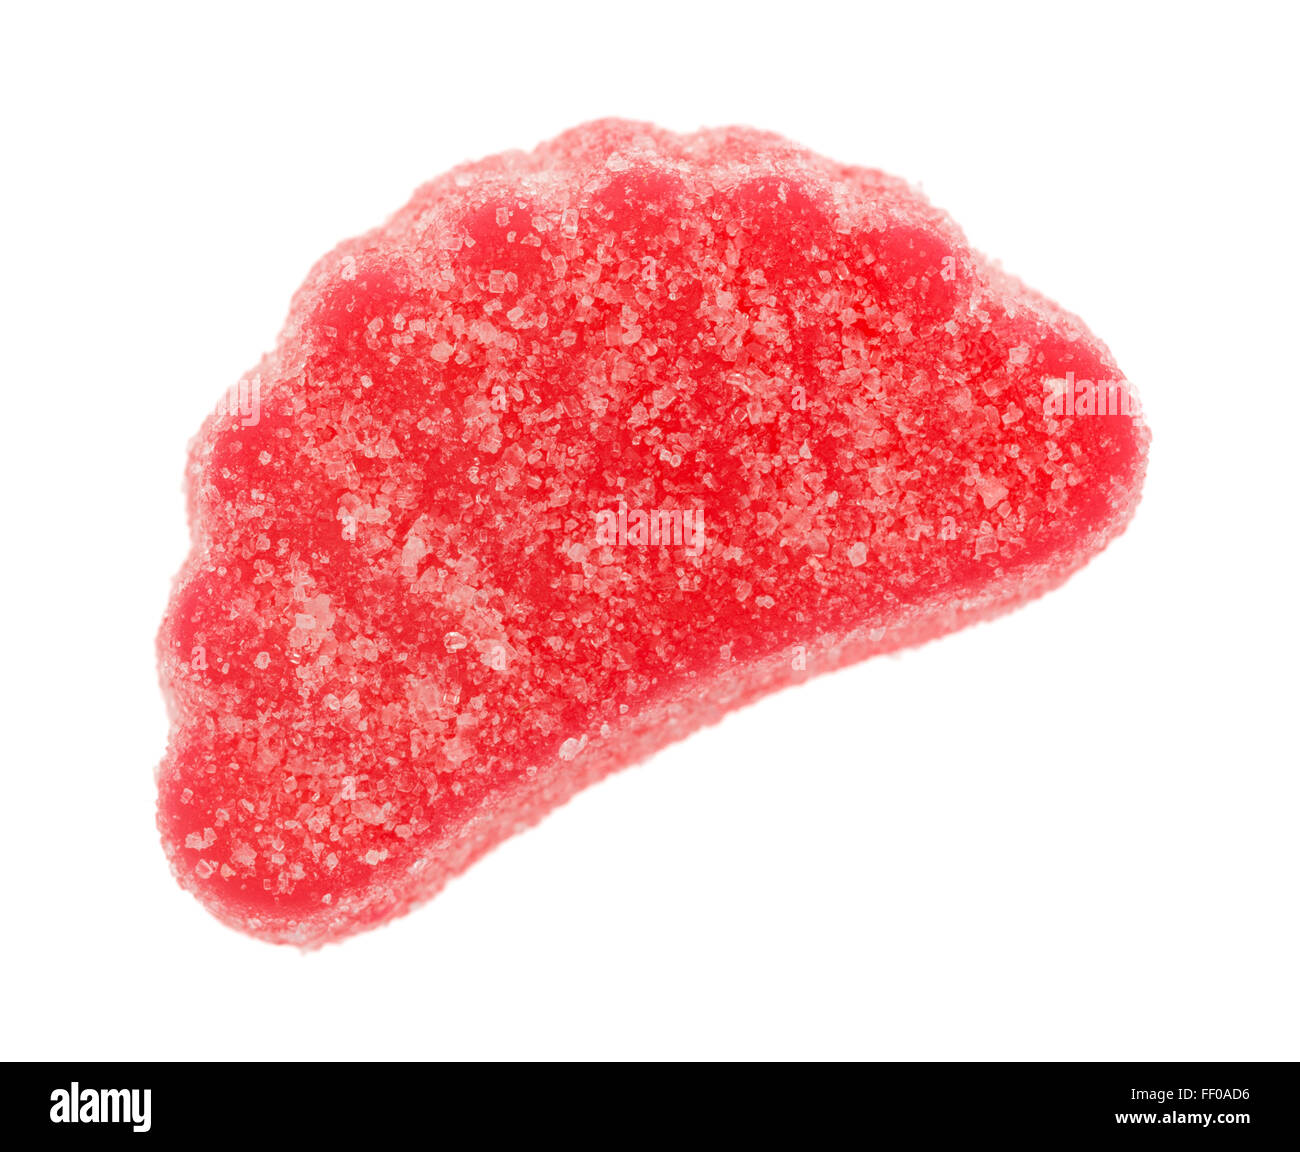 Eine rote Frucht aromatisiert Süßigkeiten Scheibe isoliert auf einem weißen Hintergrund. Stockfoto